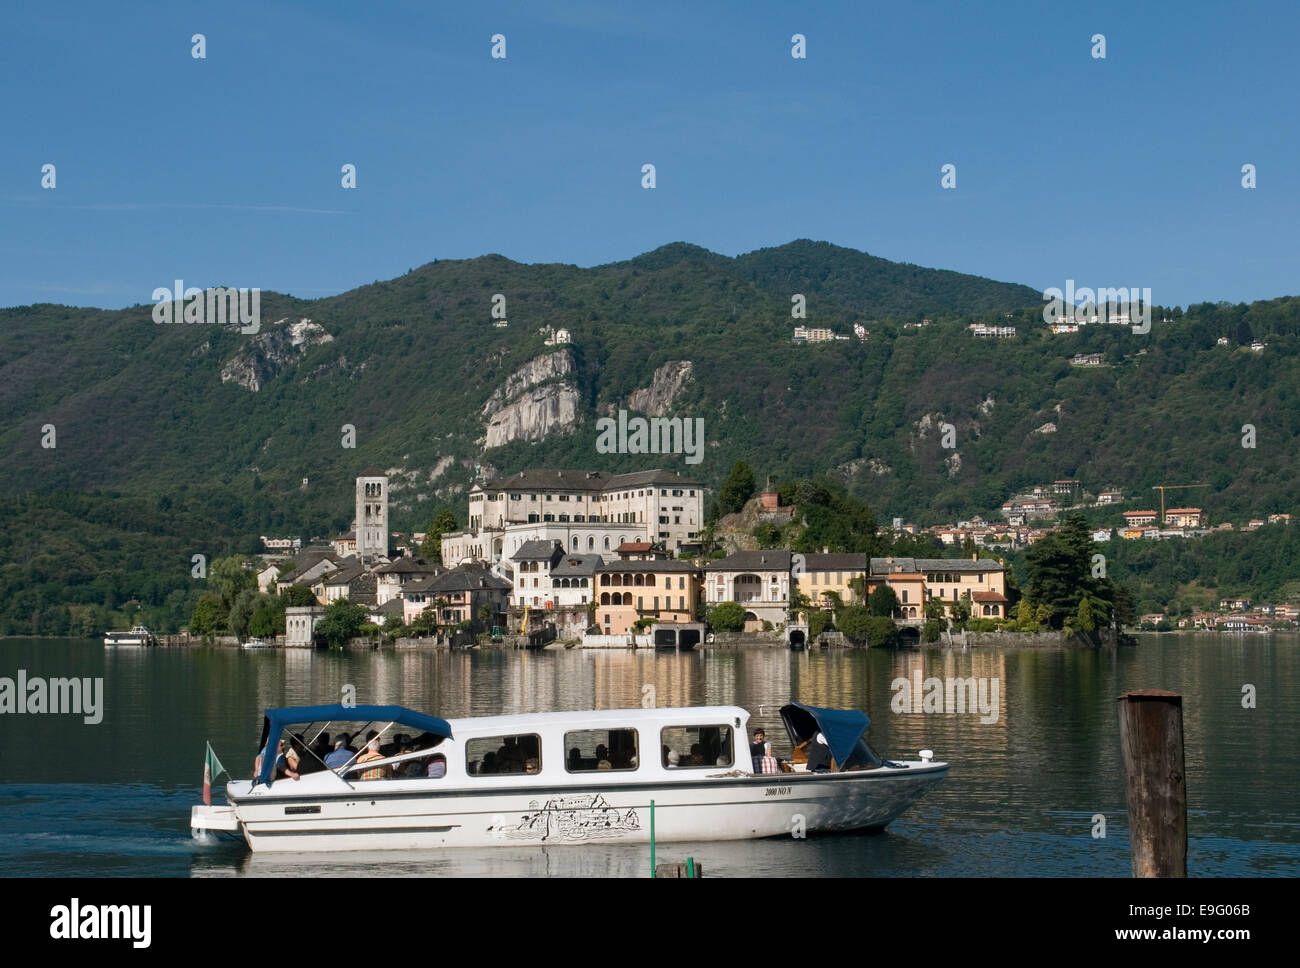 Les touristes un conseil d'un bateau à moteur dirigé vers l'île de San Giulio, lac d'Orta, Piémont, Italie Banque D'Images